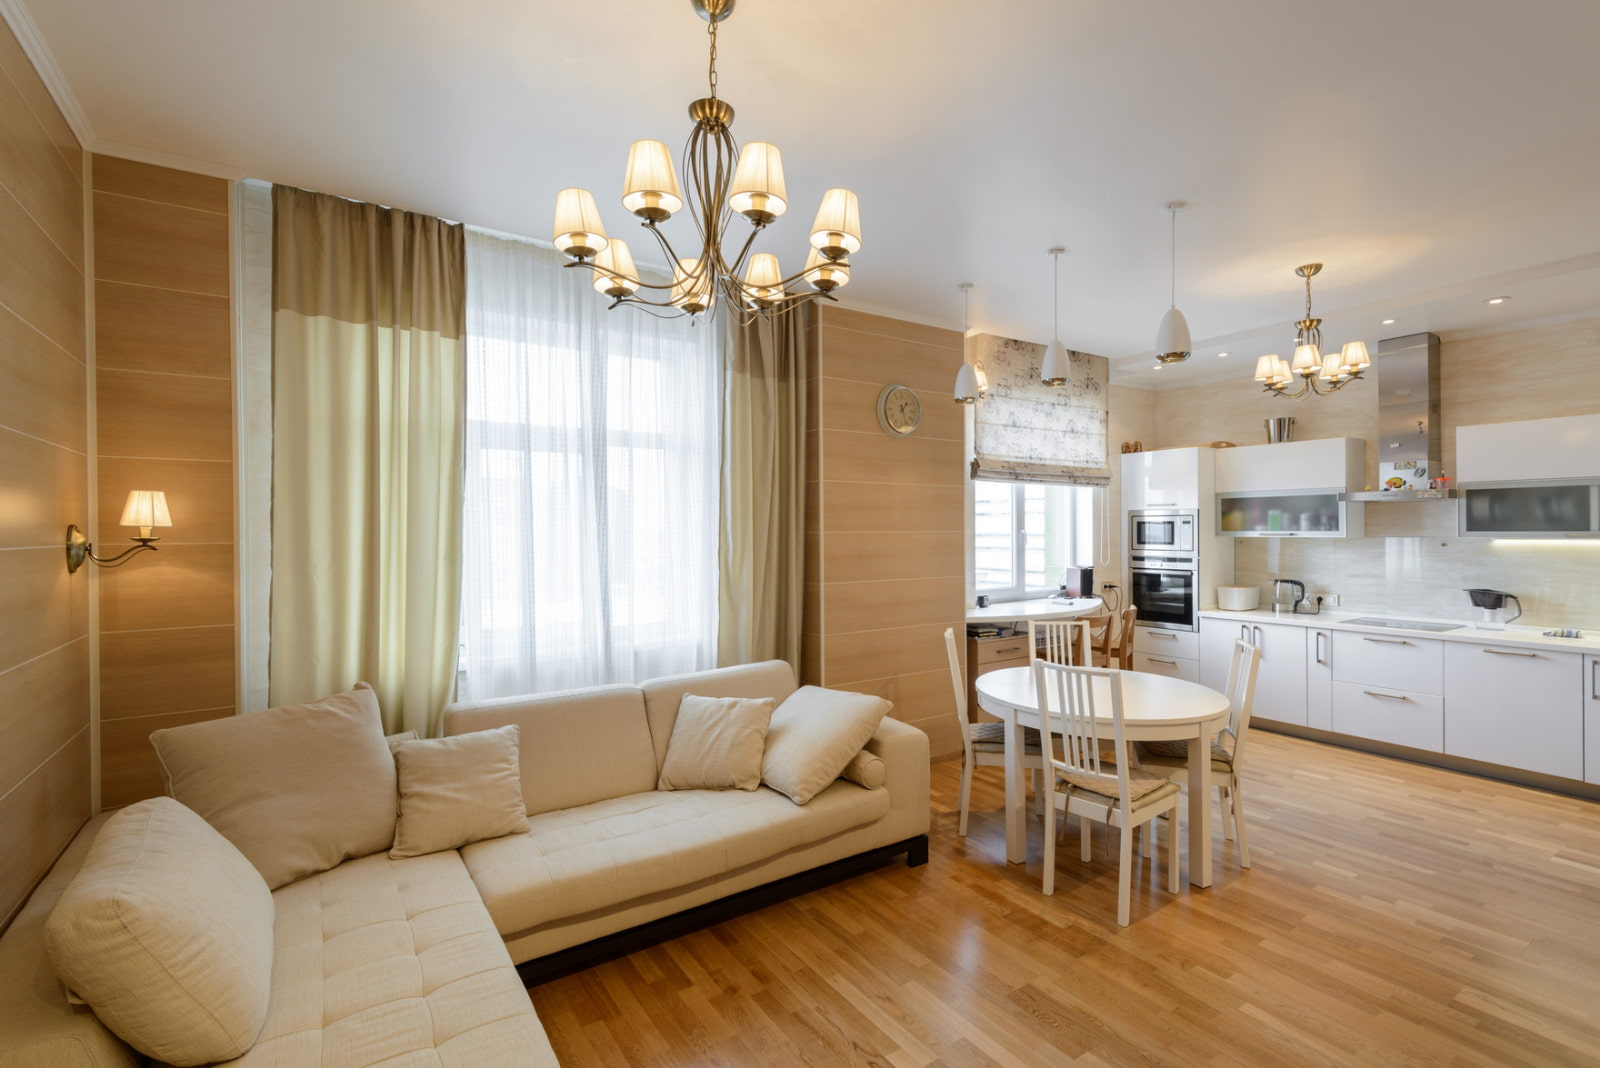 Оформляем прямоугольный зал в квартире: советы и рекомендации